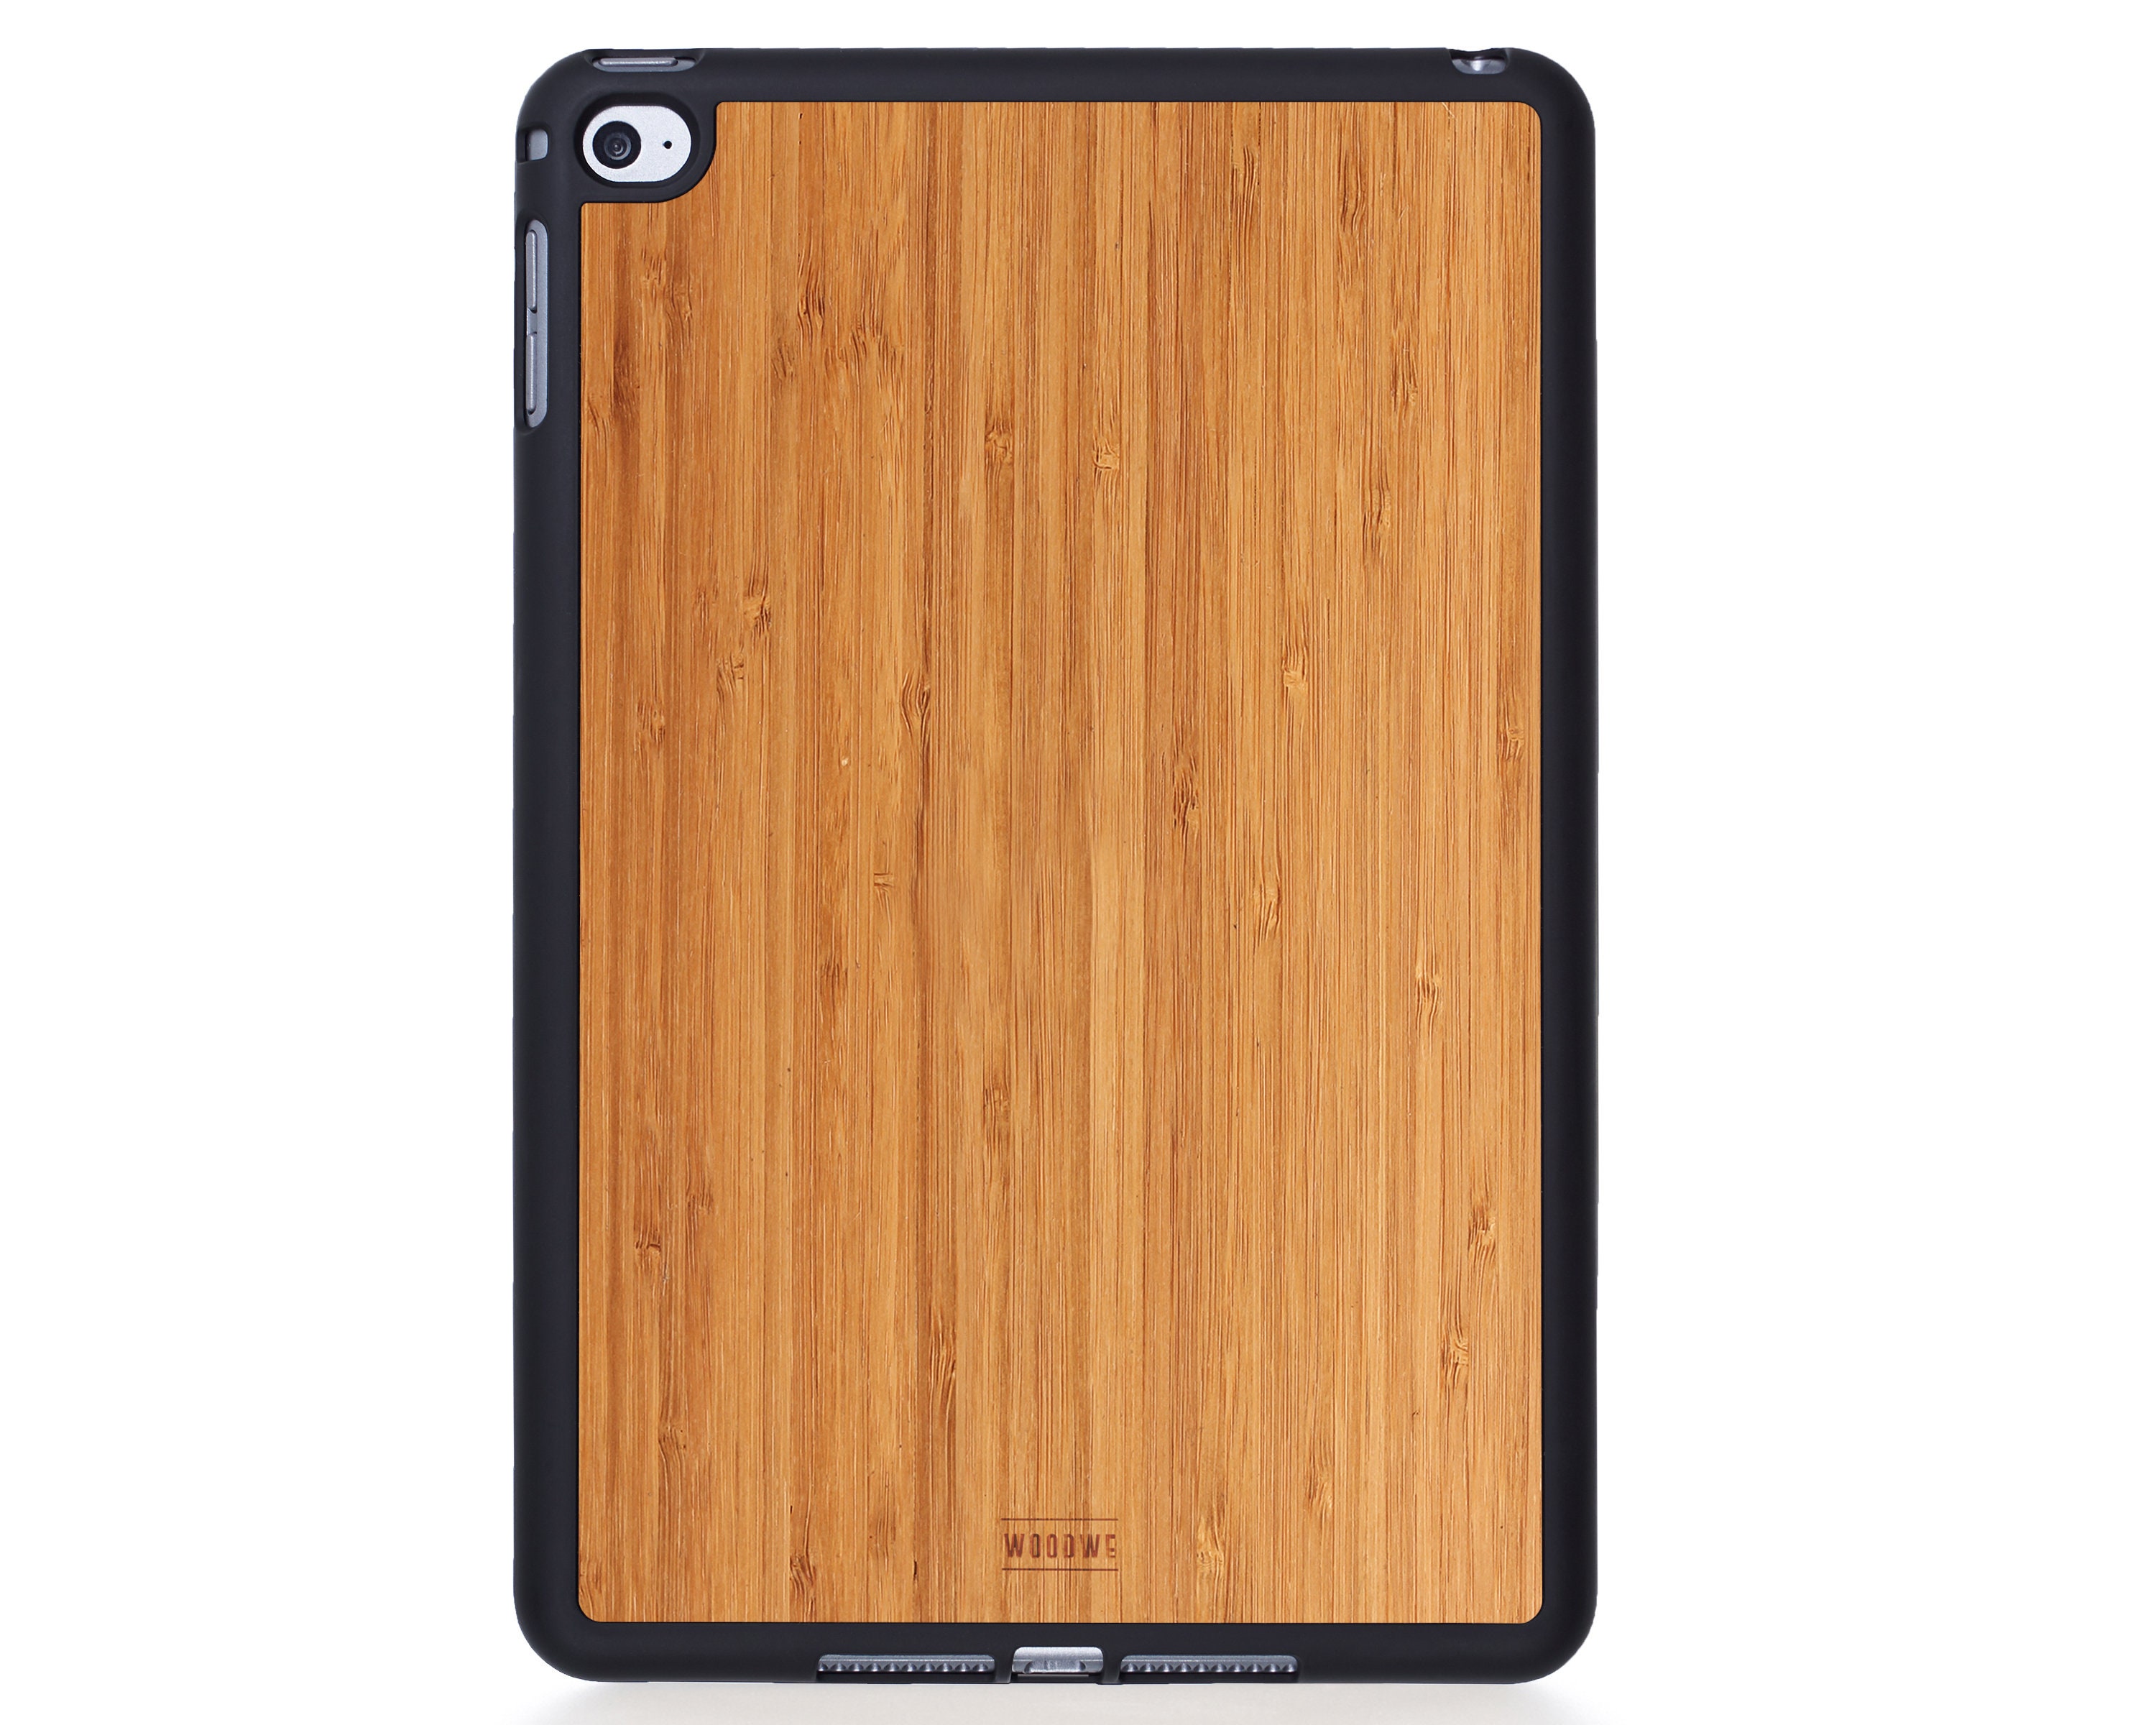 Coque en Bois - Cover Macbook Bambou